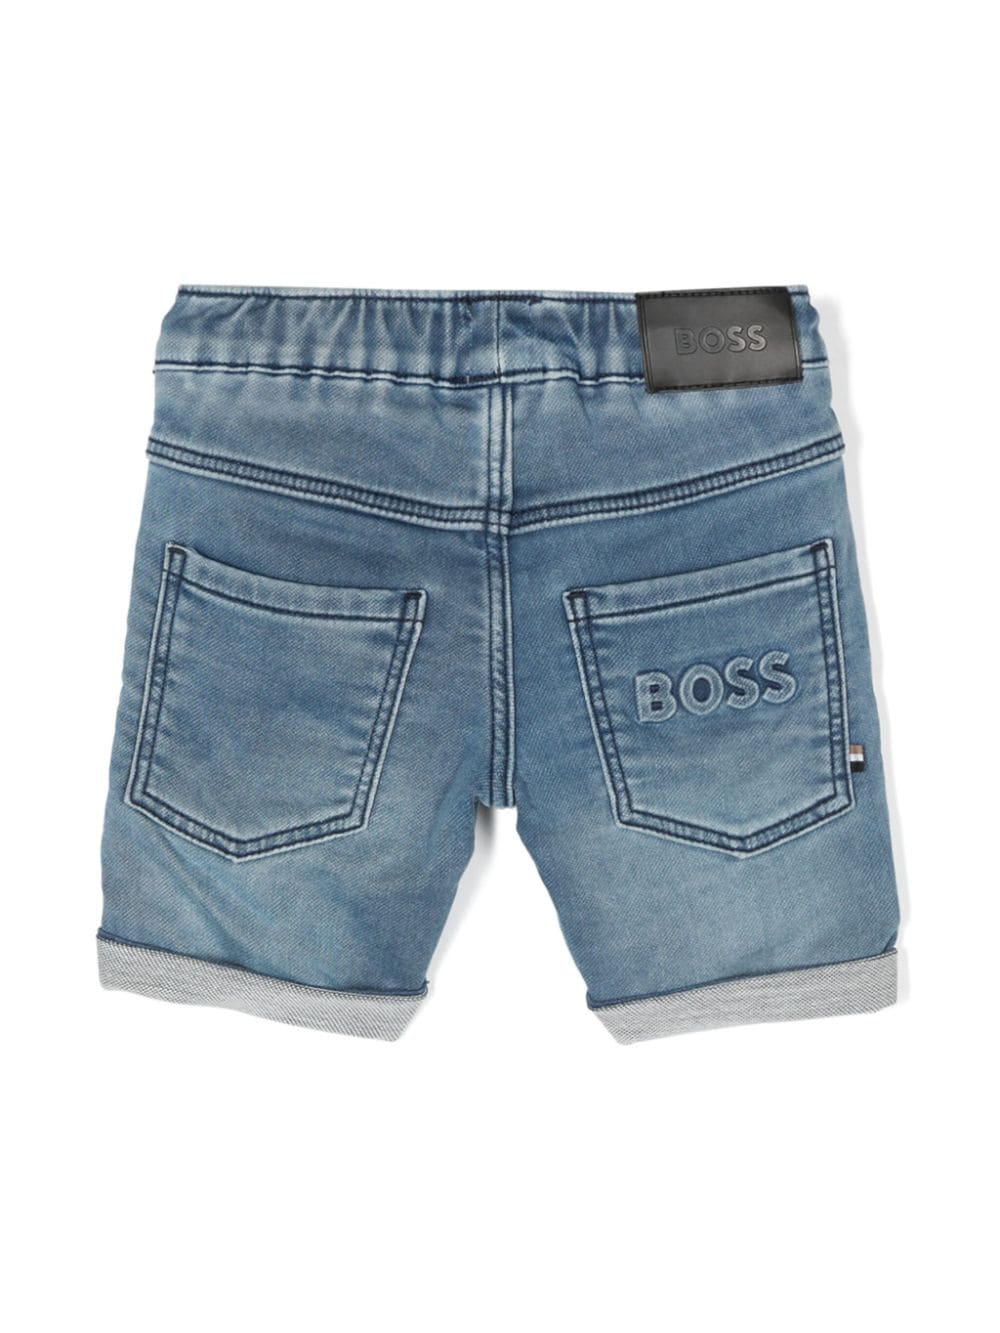 Boss Kids shorts in jeans